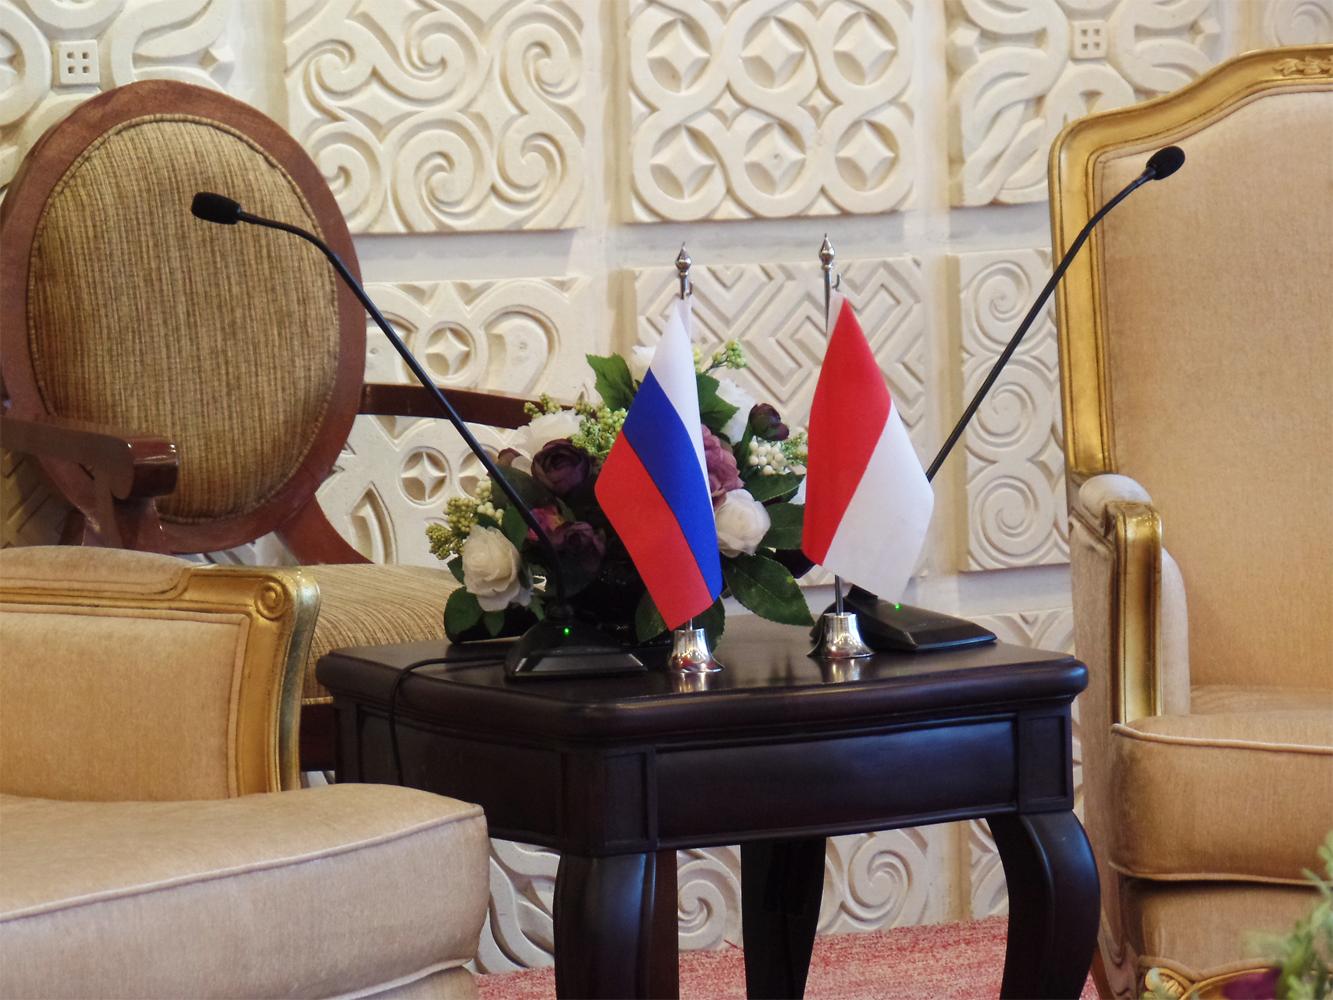 Kedua negara membahas sejumlah agenda kerja sama yang menjadi perhatian bersama, termasuk persiapan rencana kunjungan menteri luar legeri Rusia ke Indonesia pada tahun ini.